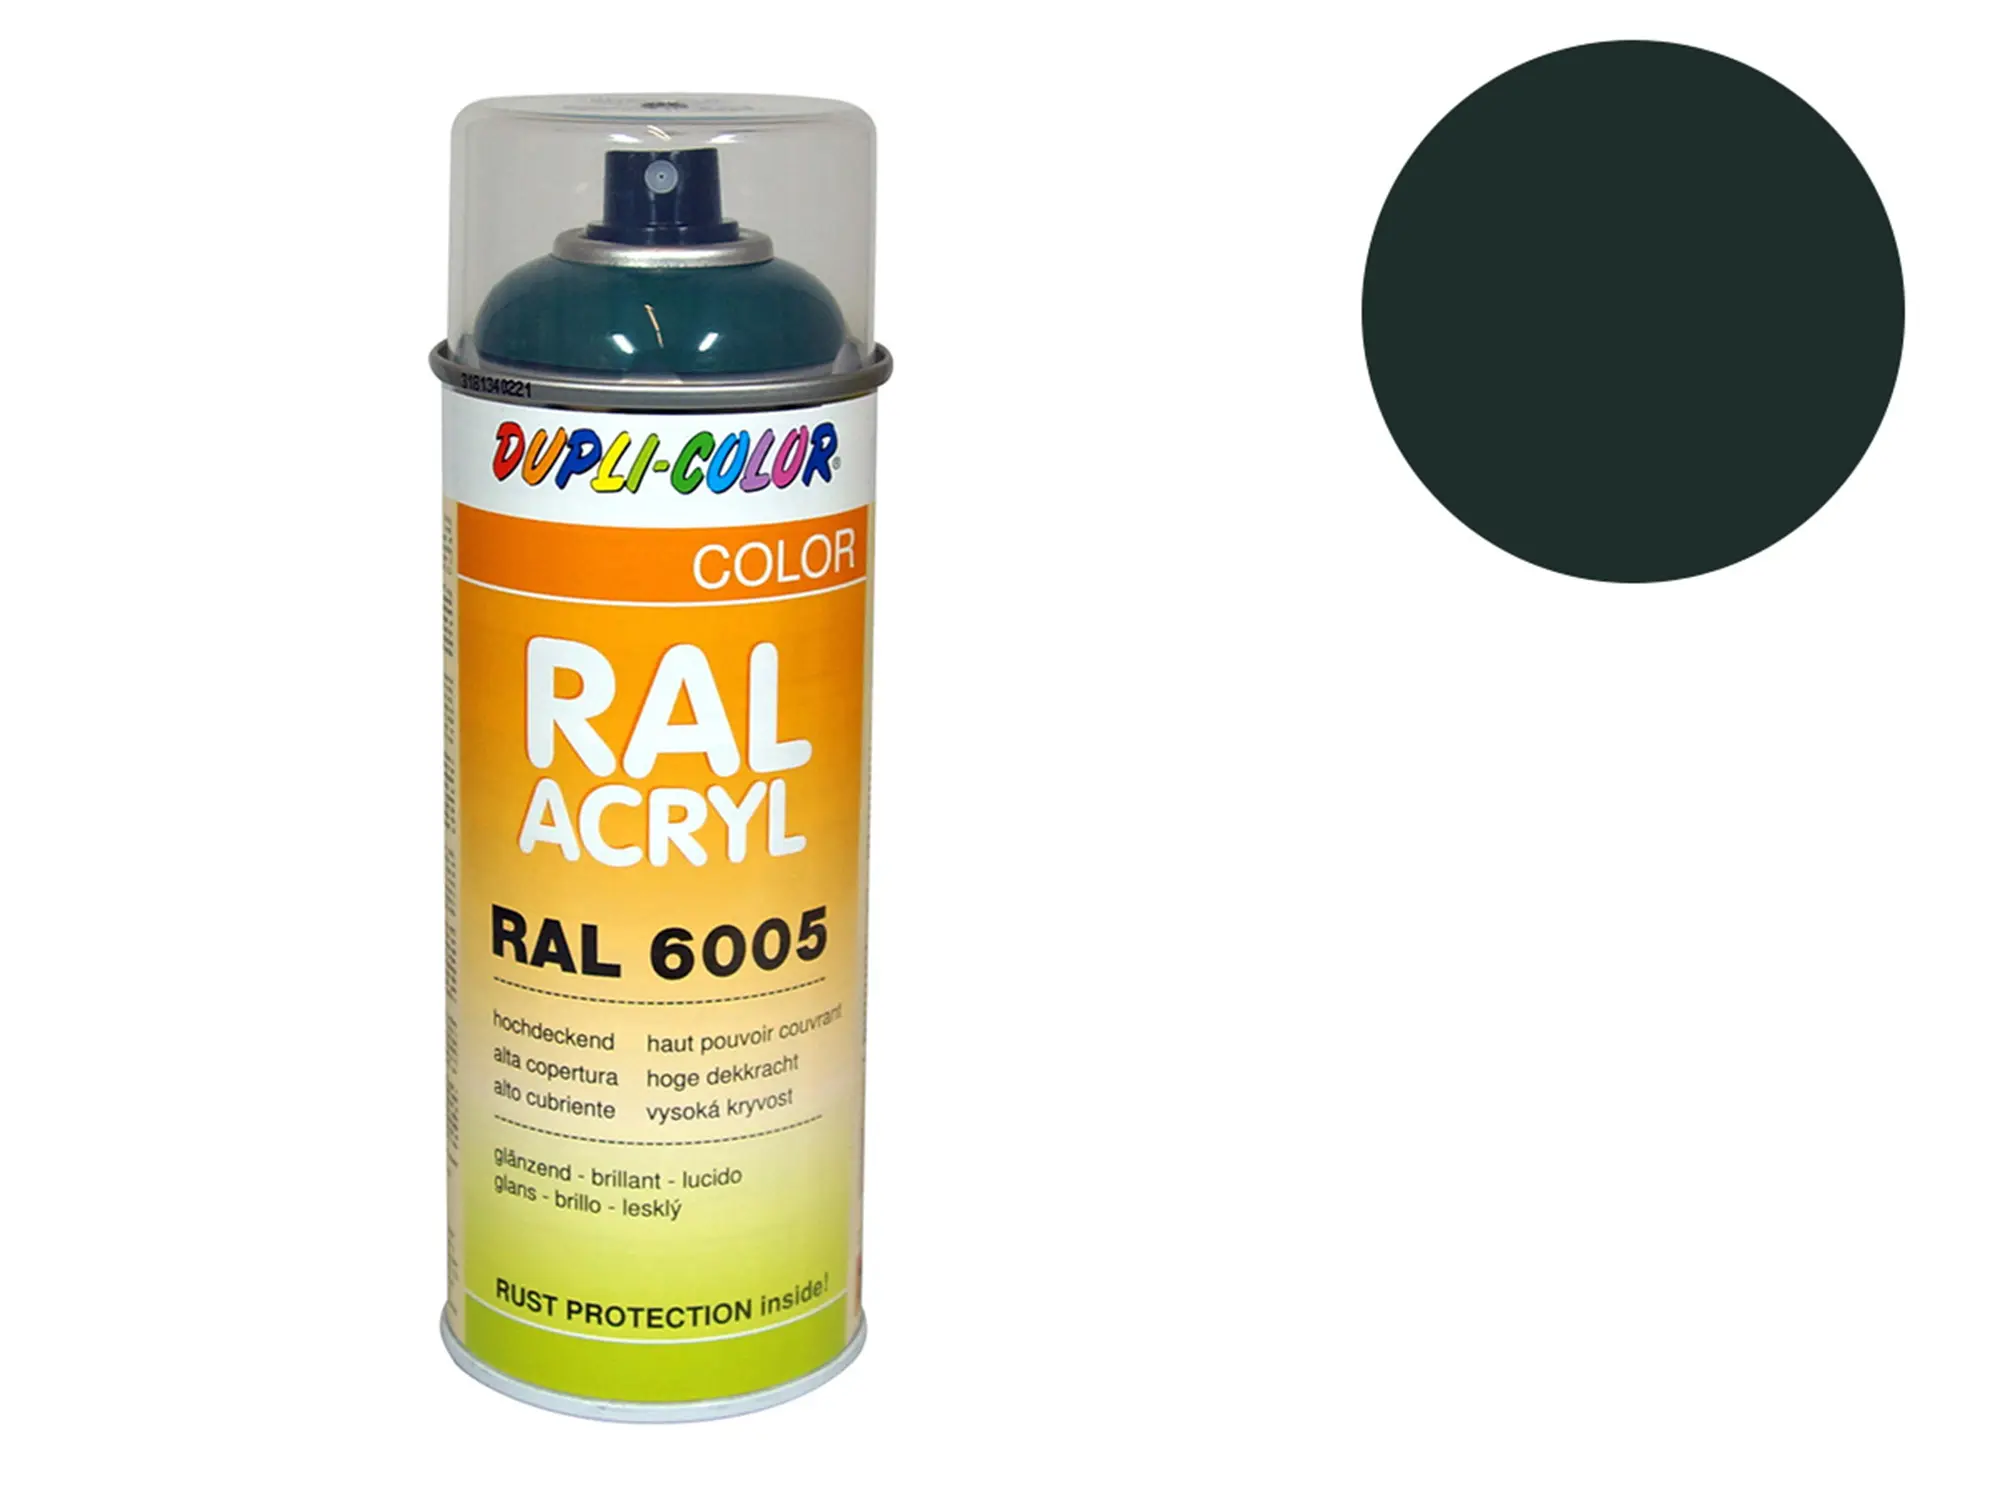 Dupli-Color Acryl-Spray RAL 6012 schwarzgrün, glänzend - 400 ml, Art.-Nr.: 10064818 - Bild 1